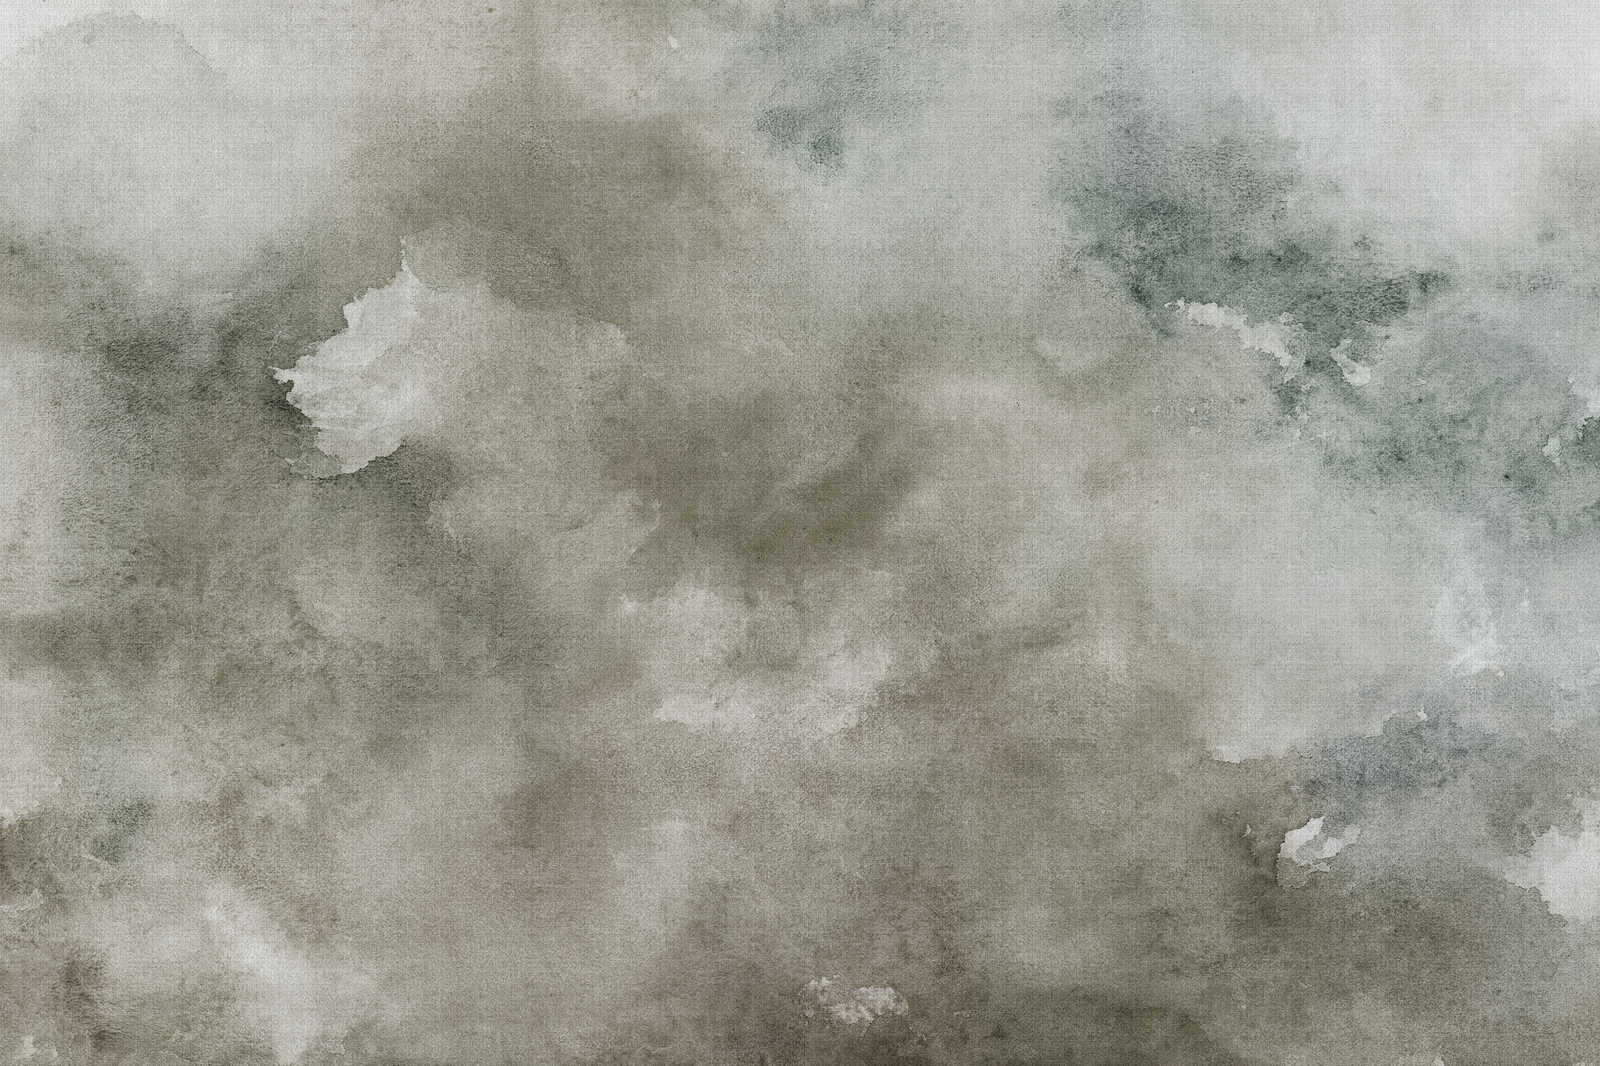             Acuarelas 1 - Pintura sobre lienzo en acuarela gris con aspecto de lino natural - 0,90 m x 0,60 m
        